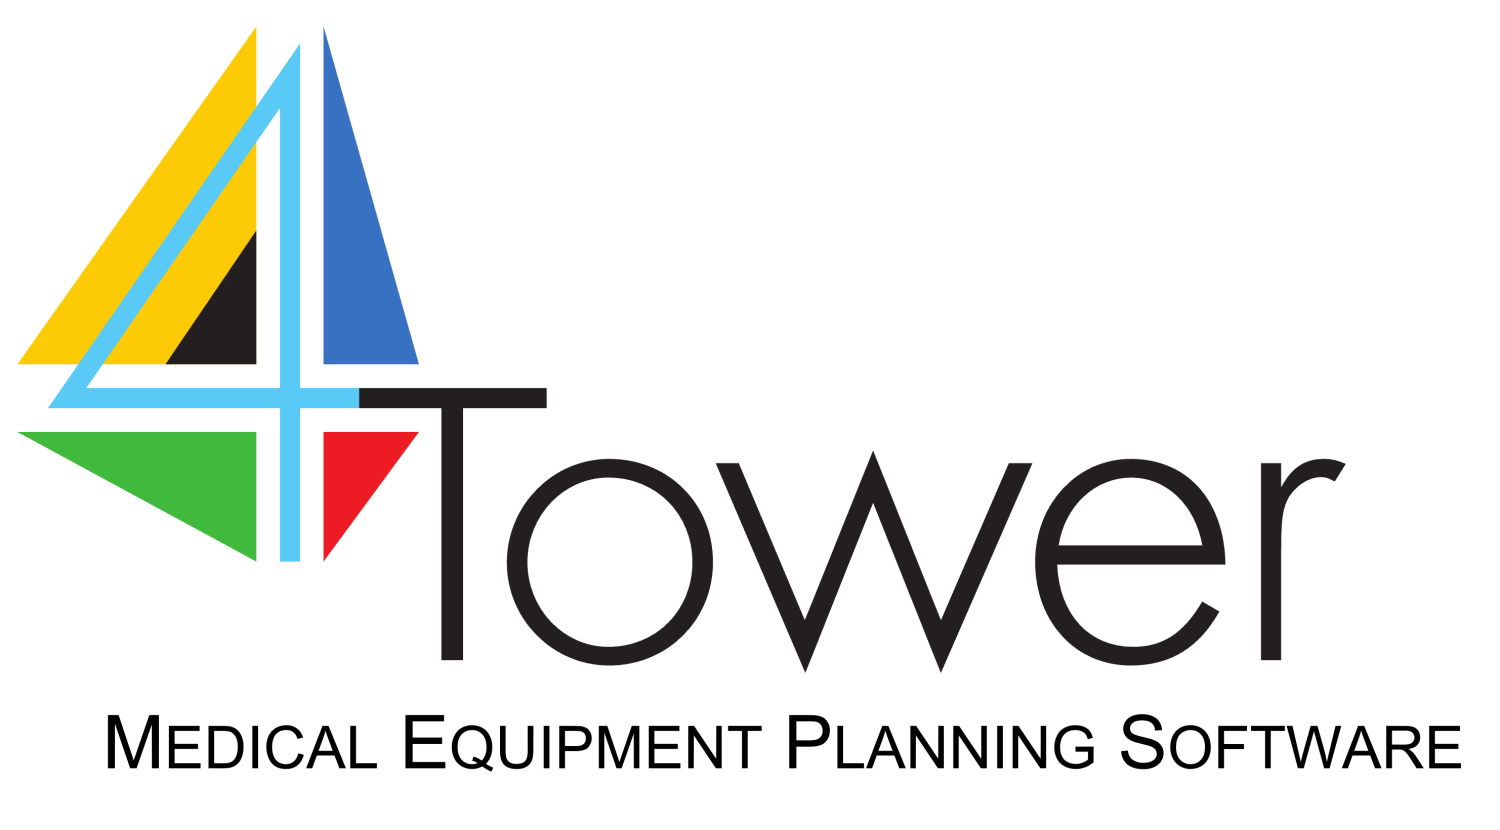 4 Tower logo